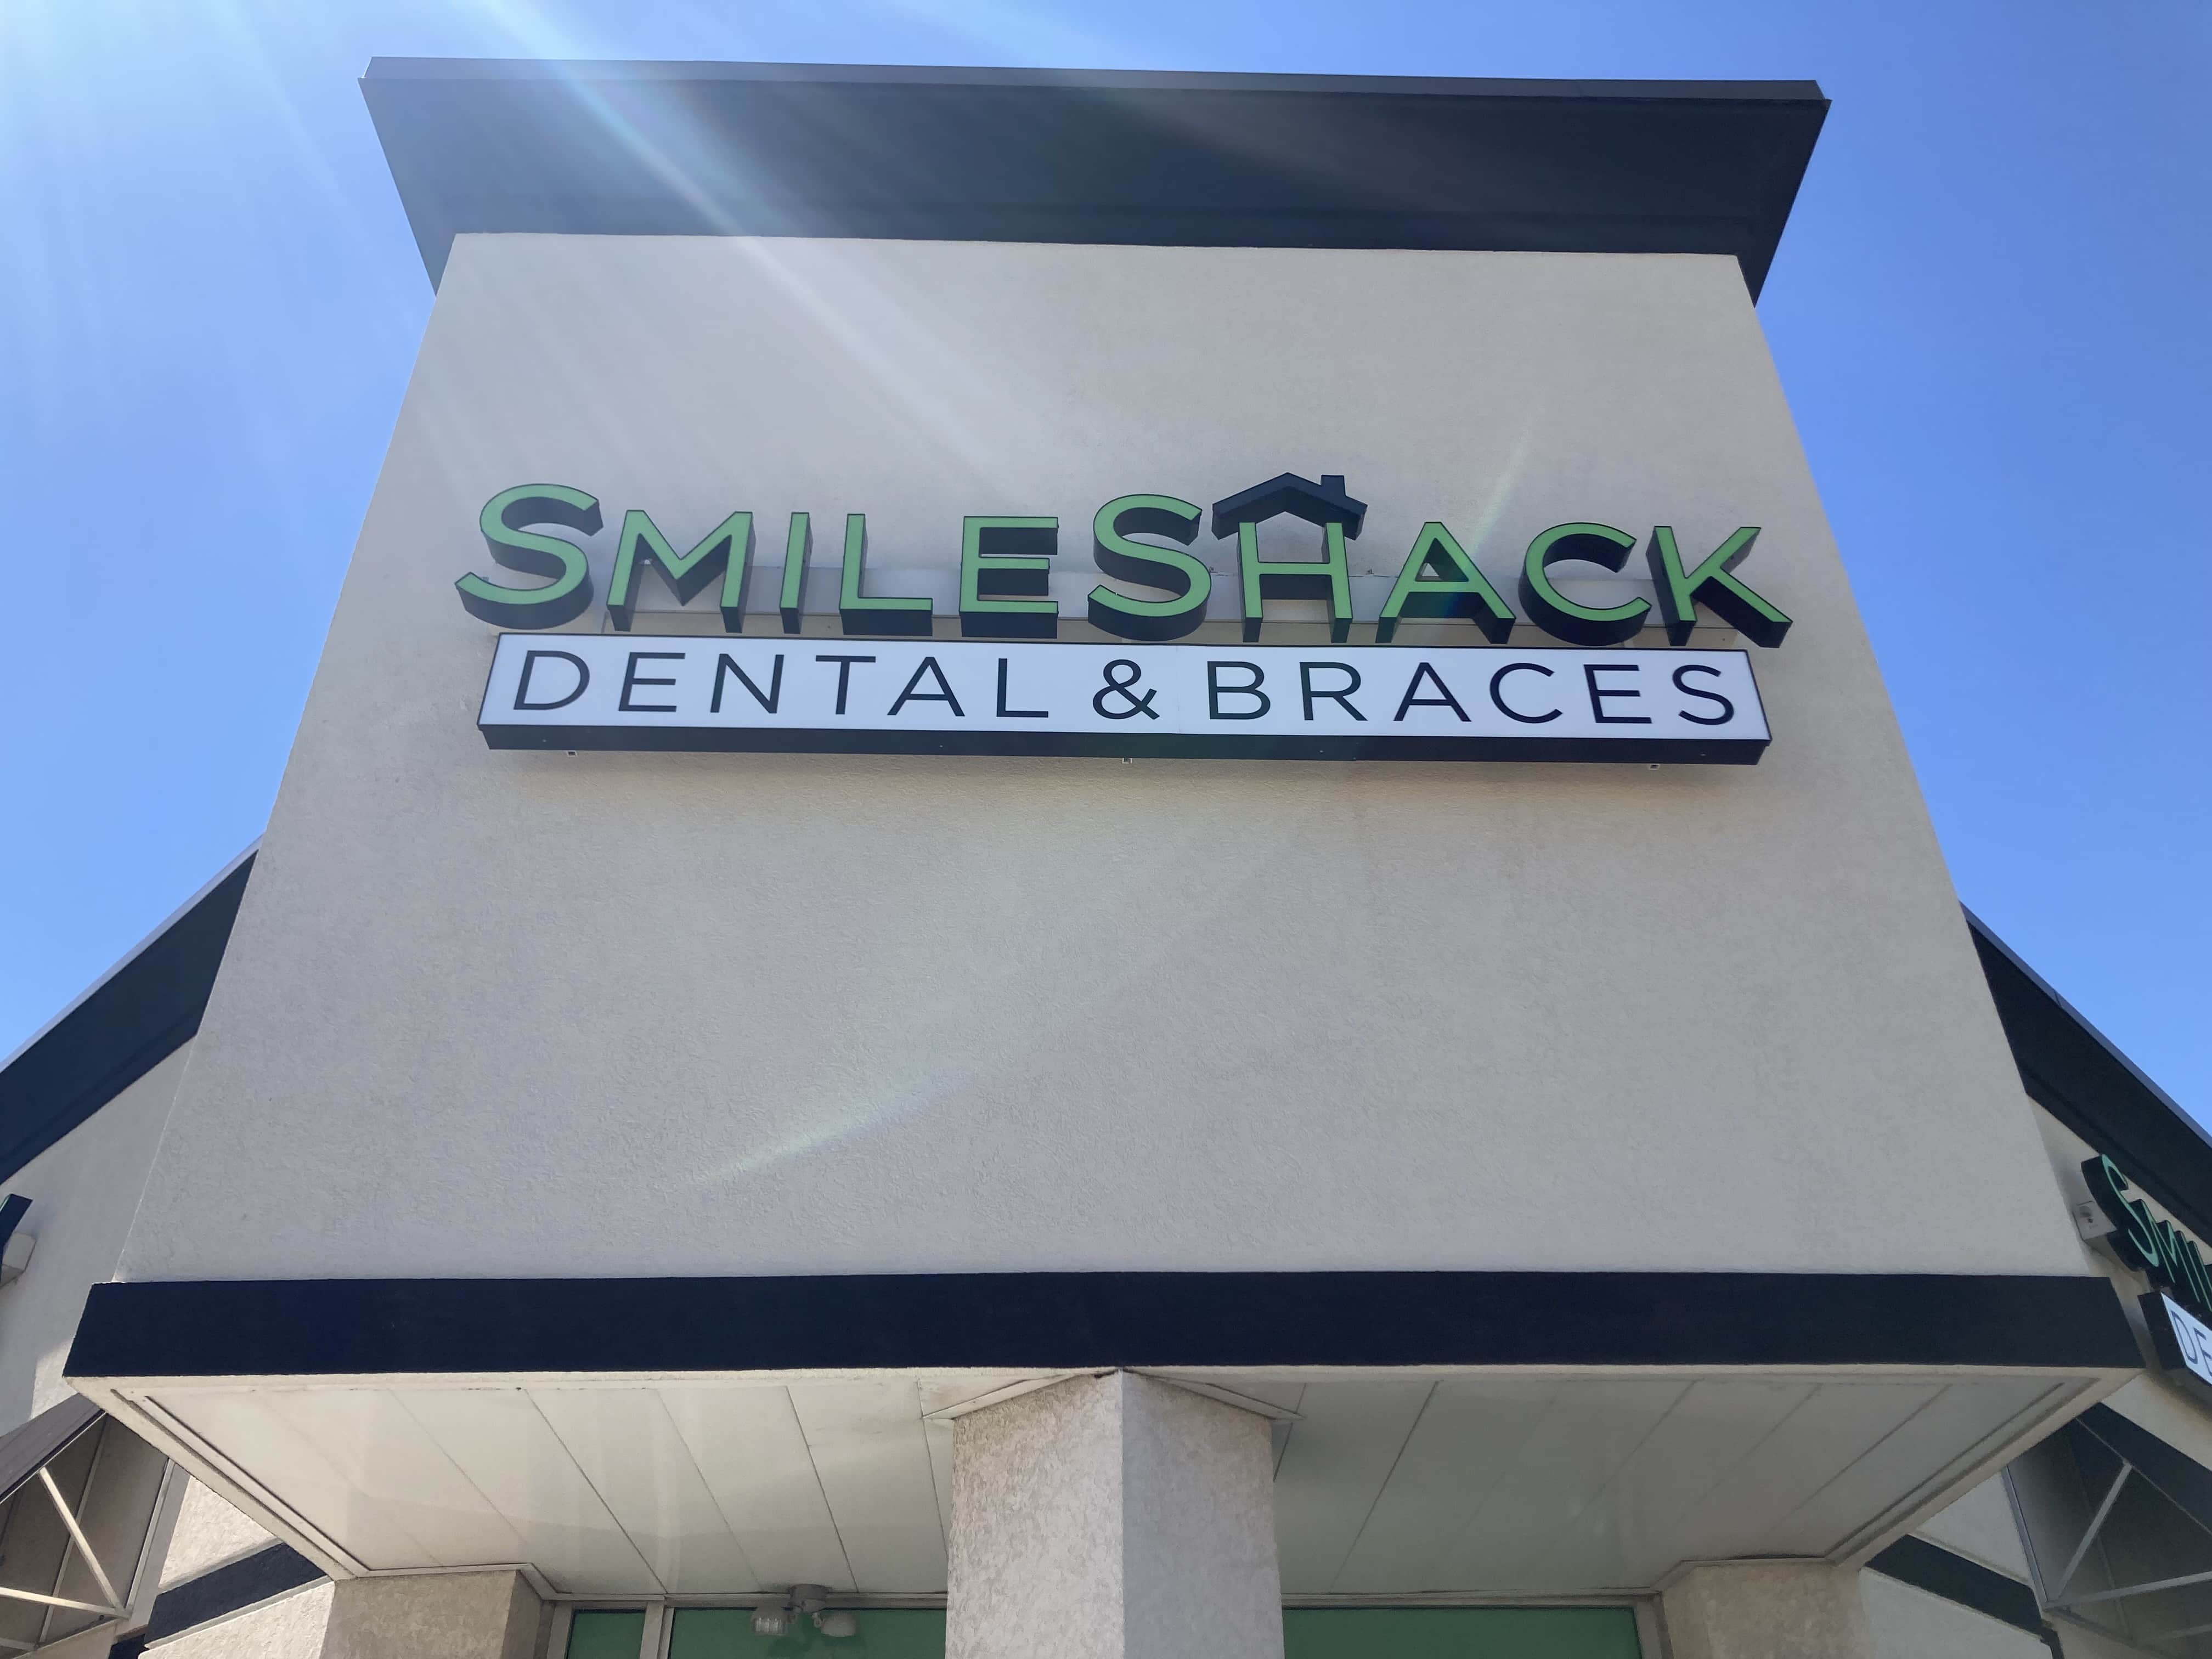 SmileShack Dental & Braces - Raytown, MO, US, dental works